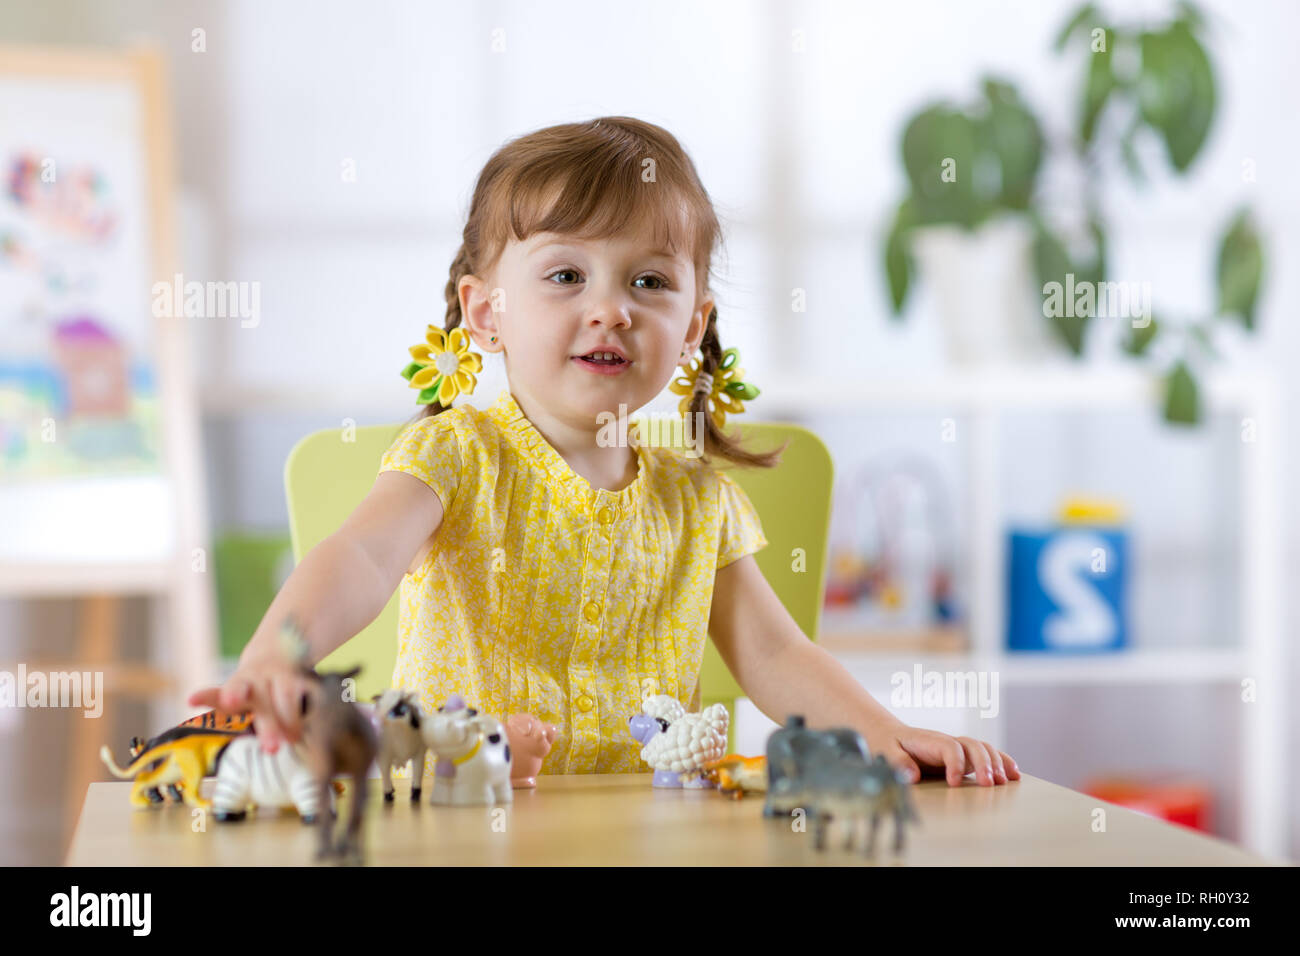 Portrait de jeune fille jouant avec des enfants joyeux, statuette d'animaux dans les jardins ou à la maternelle Banque D'Images